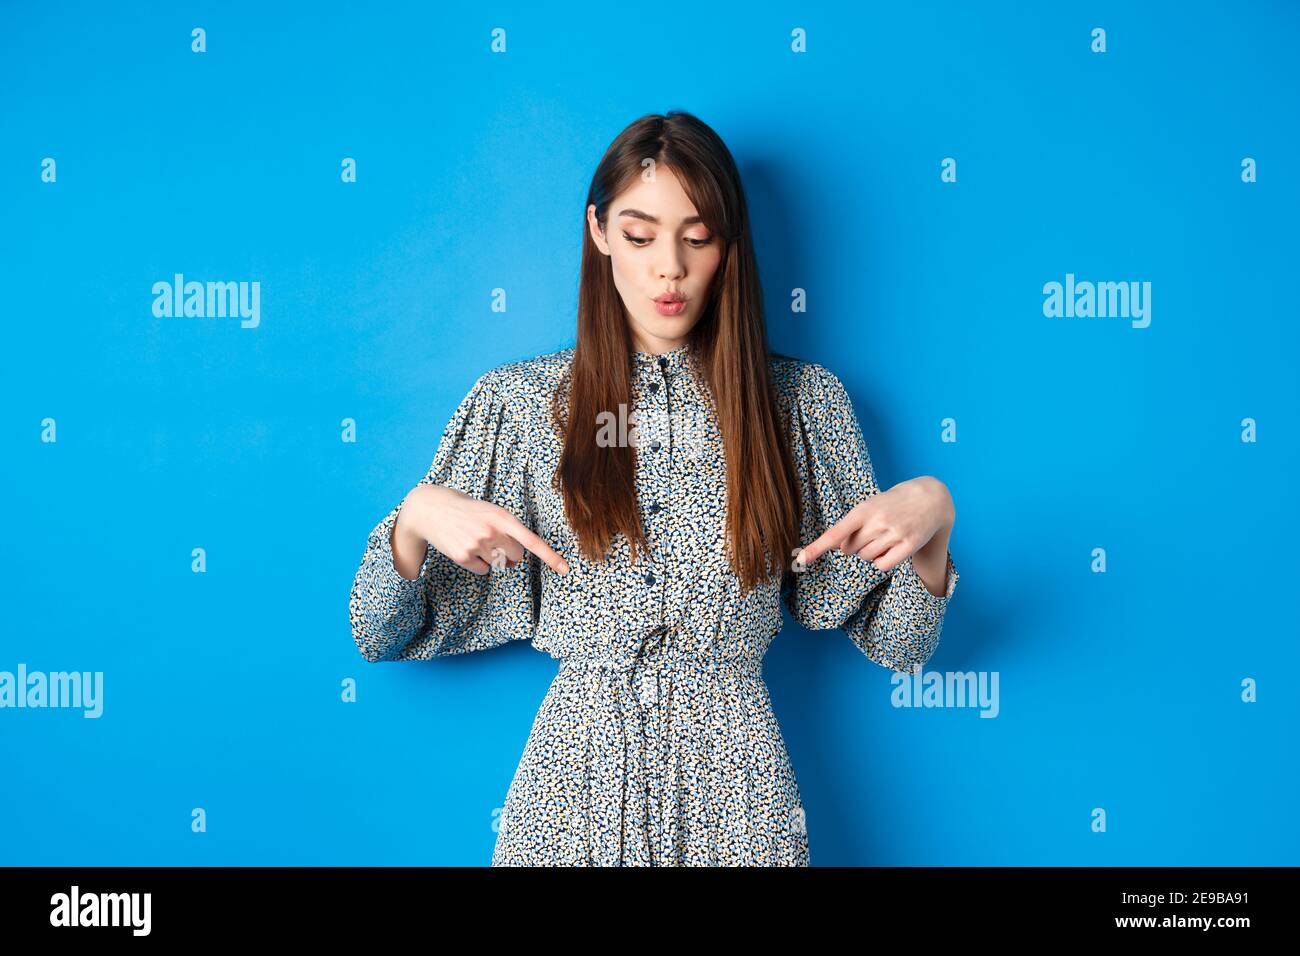 Fasziniert schöne Mädchen in Kleid sagen wow, Blick und zeigt auf Werbung,  zeigt promo mit interessierter Gesicht, blauer Hintergrund Stockfotografie  - Alamy